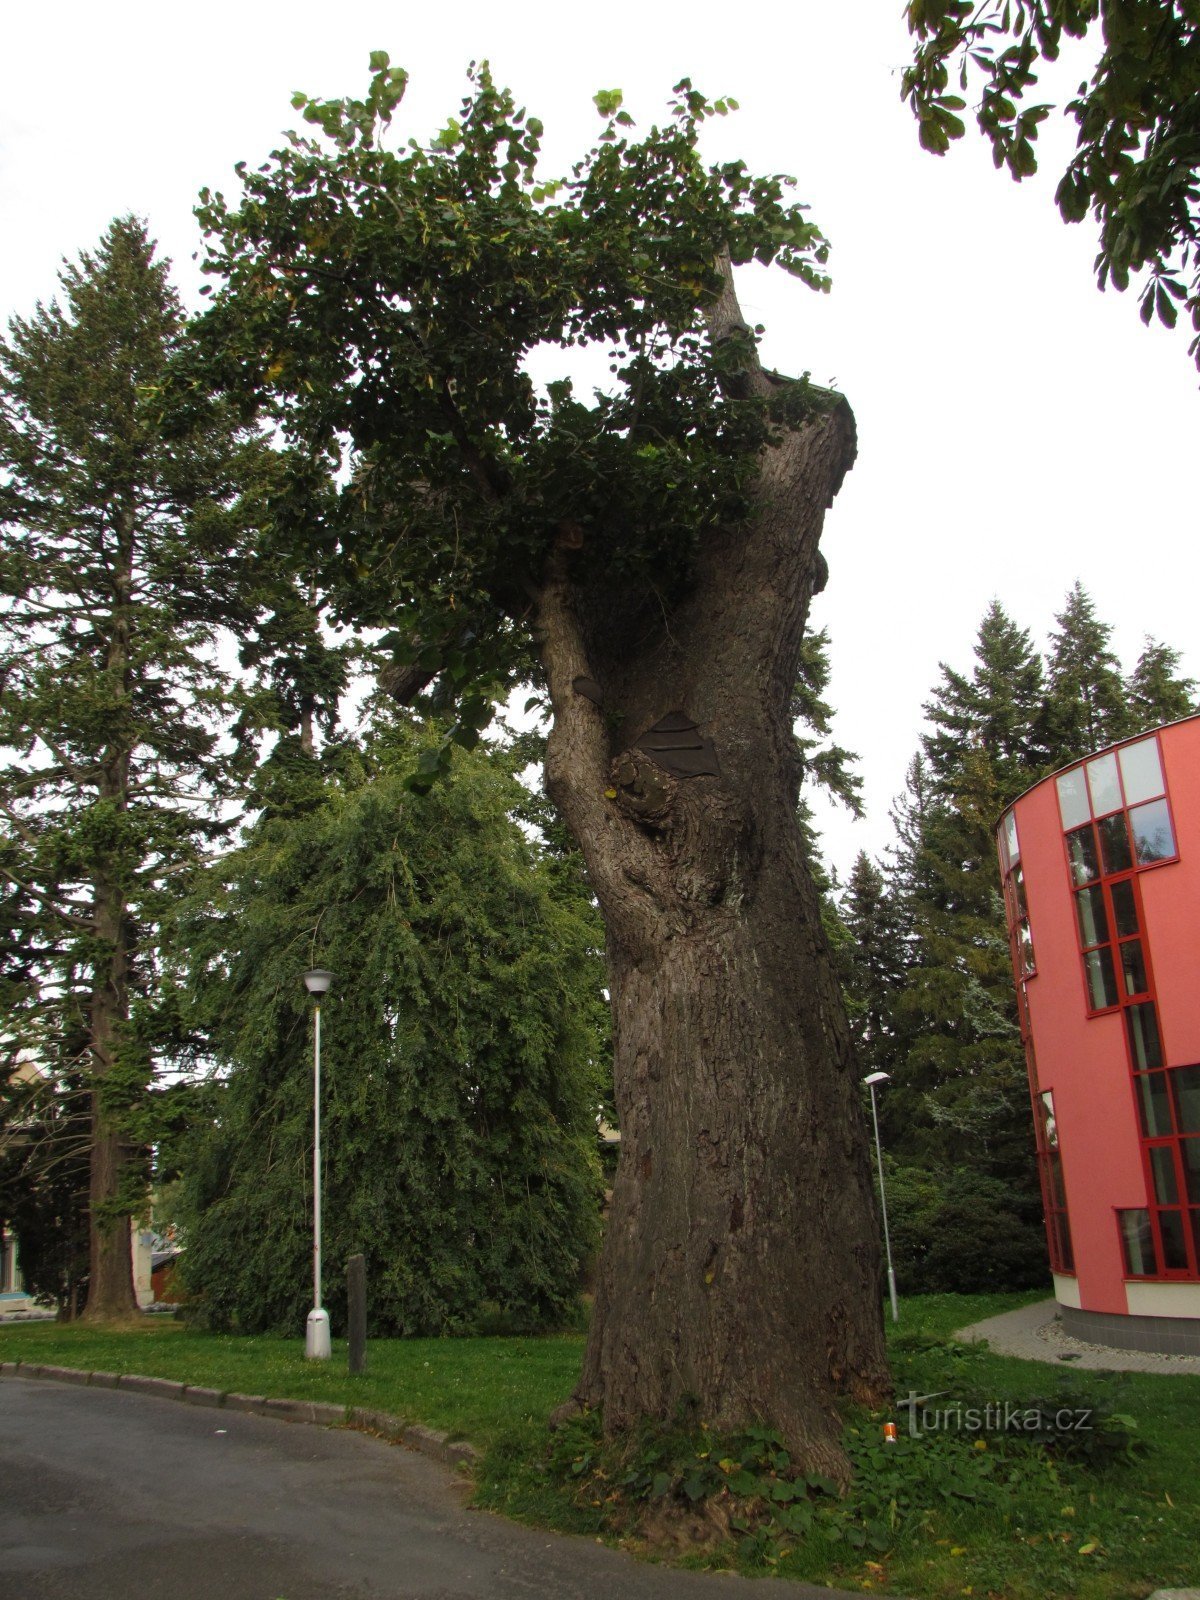 Липа Я. А. Коменського, меморіальне дерево в Римаржові